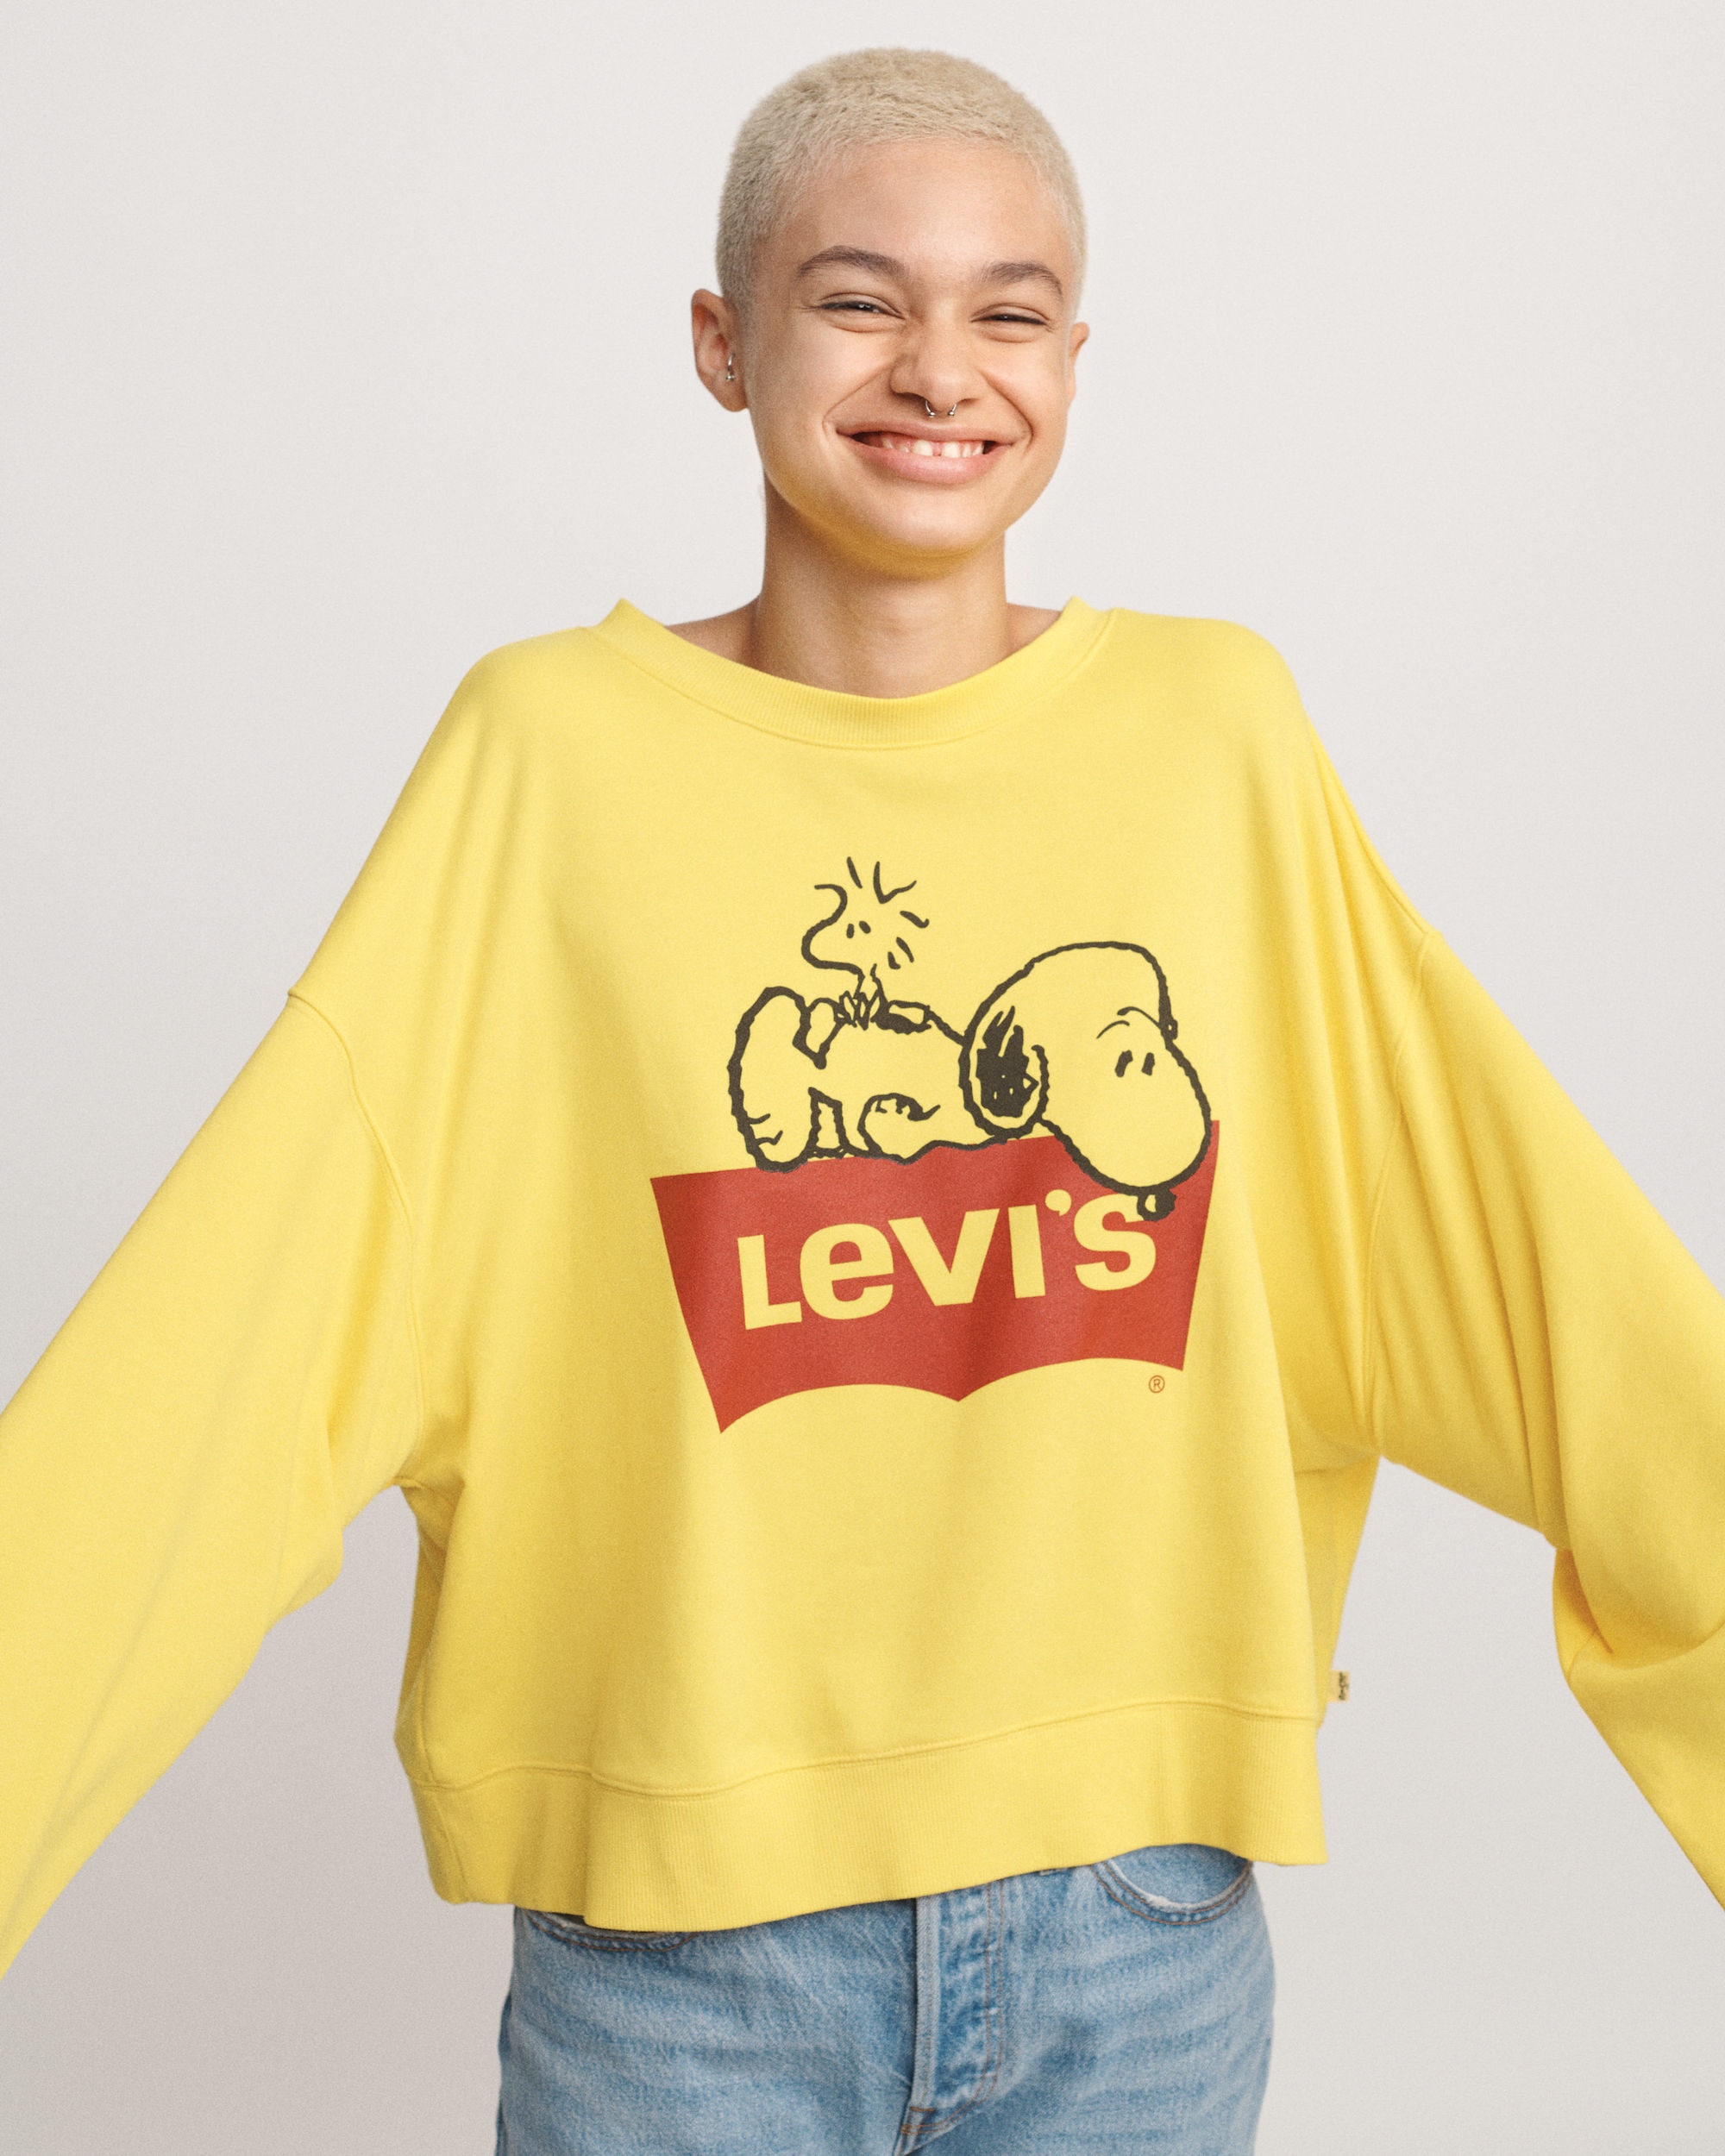 Levi's x《Peanuts》2019 春夏聯名系列上架